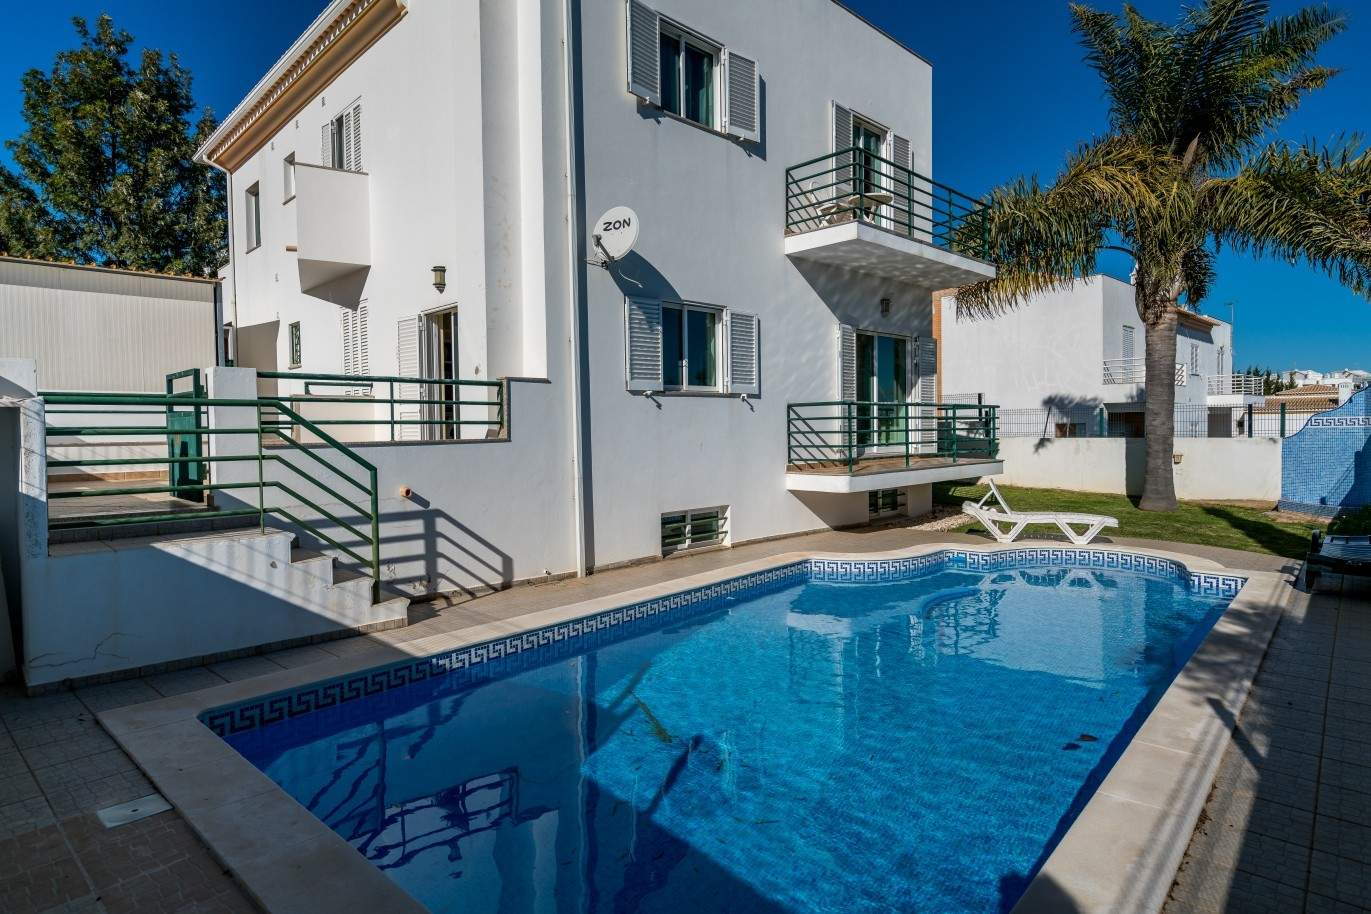 Freistehende villa zum Verkauf mit pool, in der Nähe von Strand und golf, Albufeira, Algarve, Portugal_73897